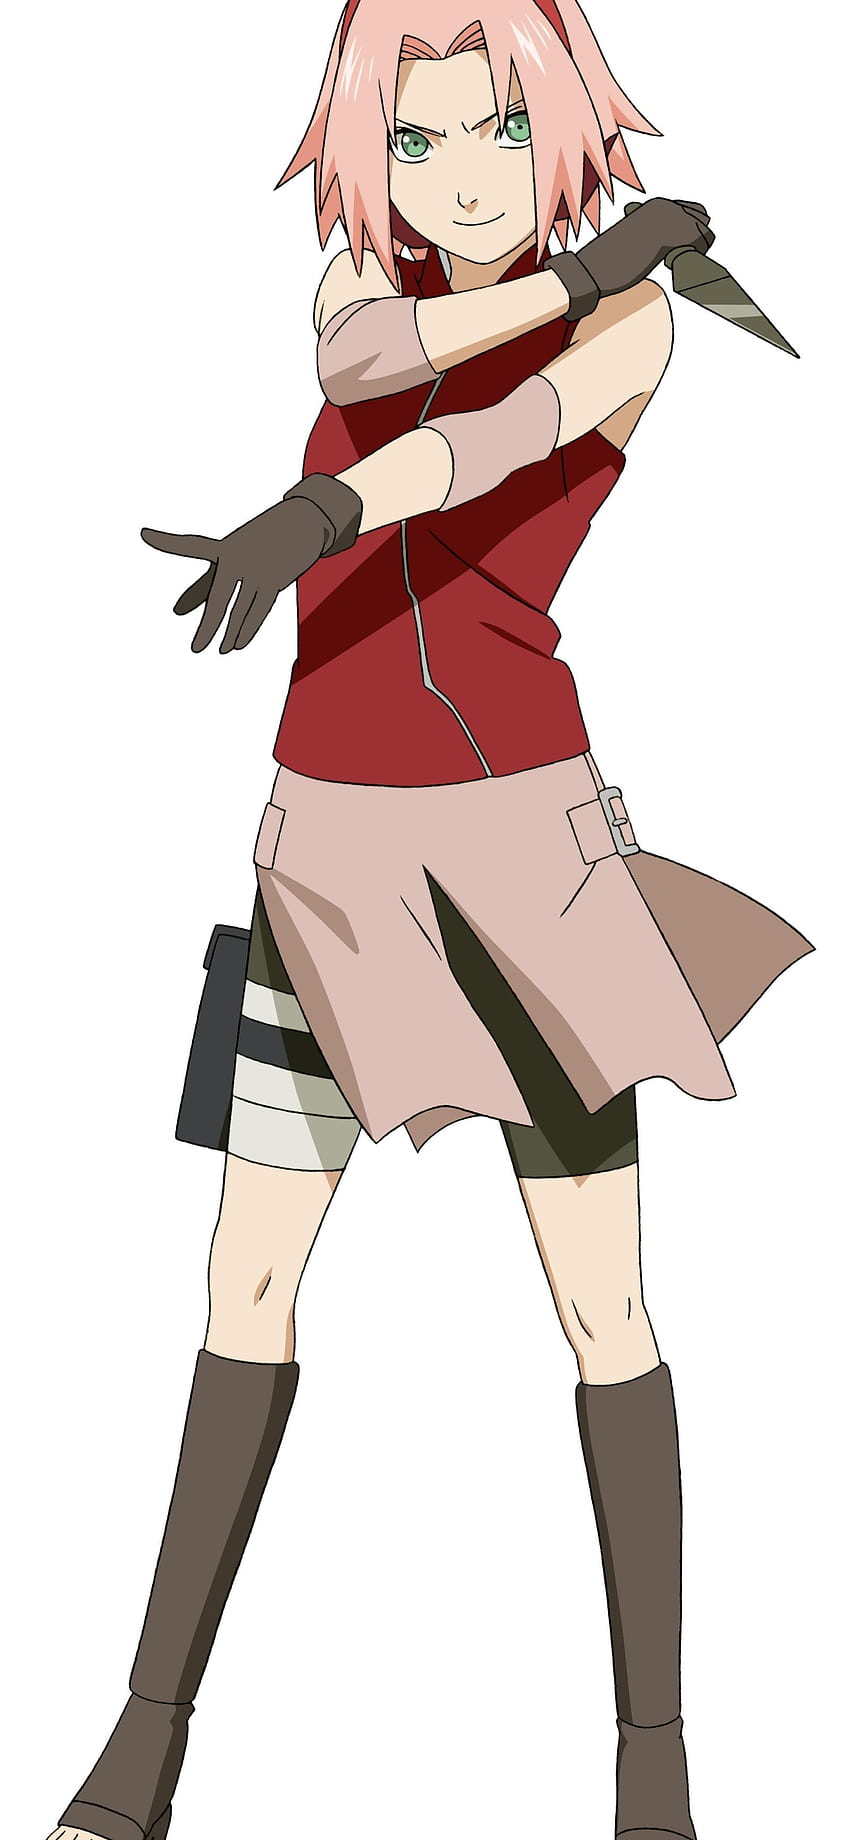 Bandai Naruto Shippuden Haruno Sakura Anime Heroes 6.5-in Action Figure |  GameStop